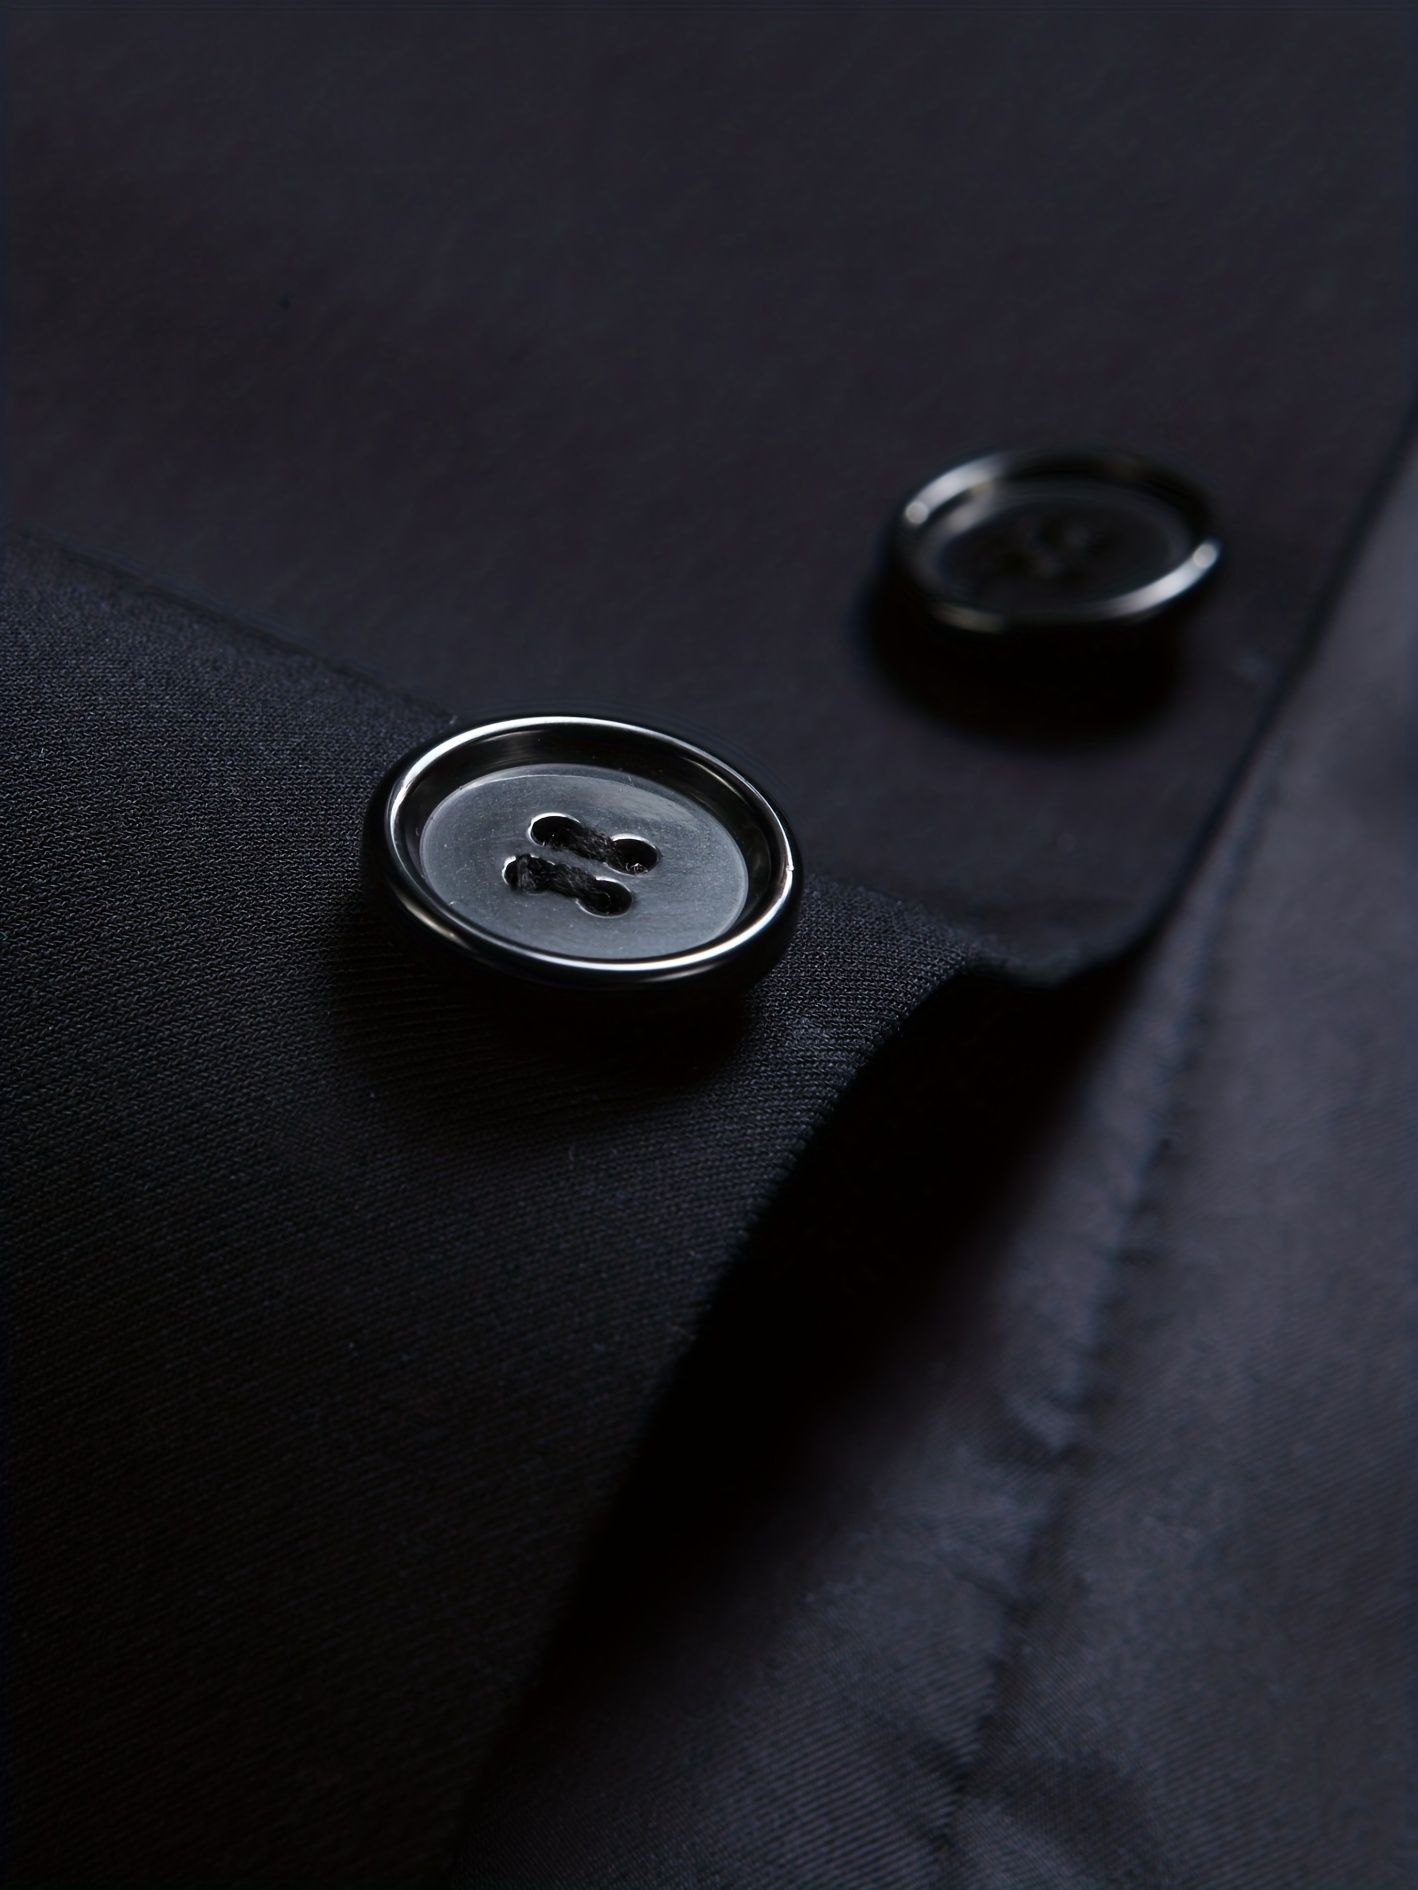 Formal Men's Two Button Suit Jacket Dress Pants Suit Set - Temu